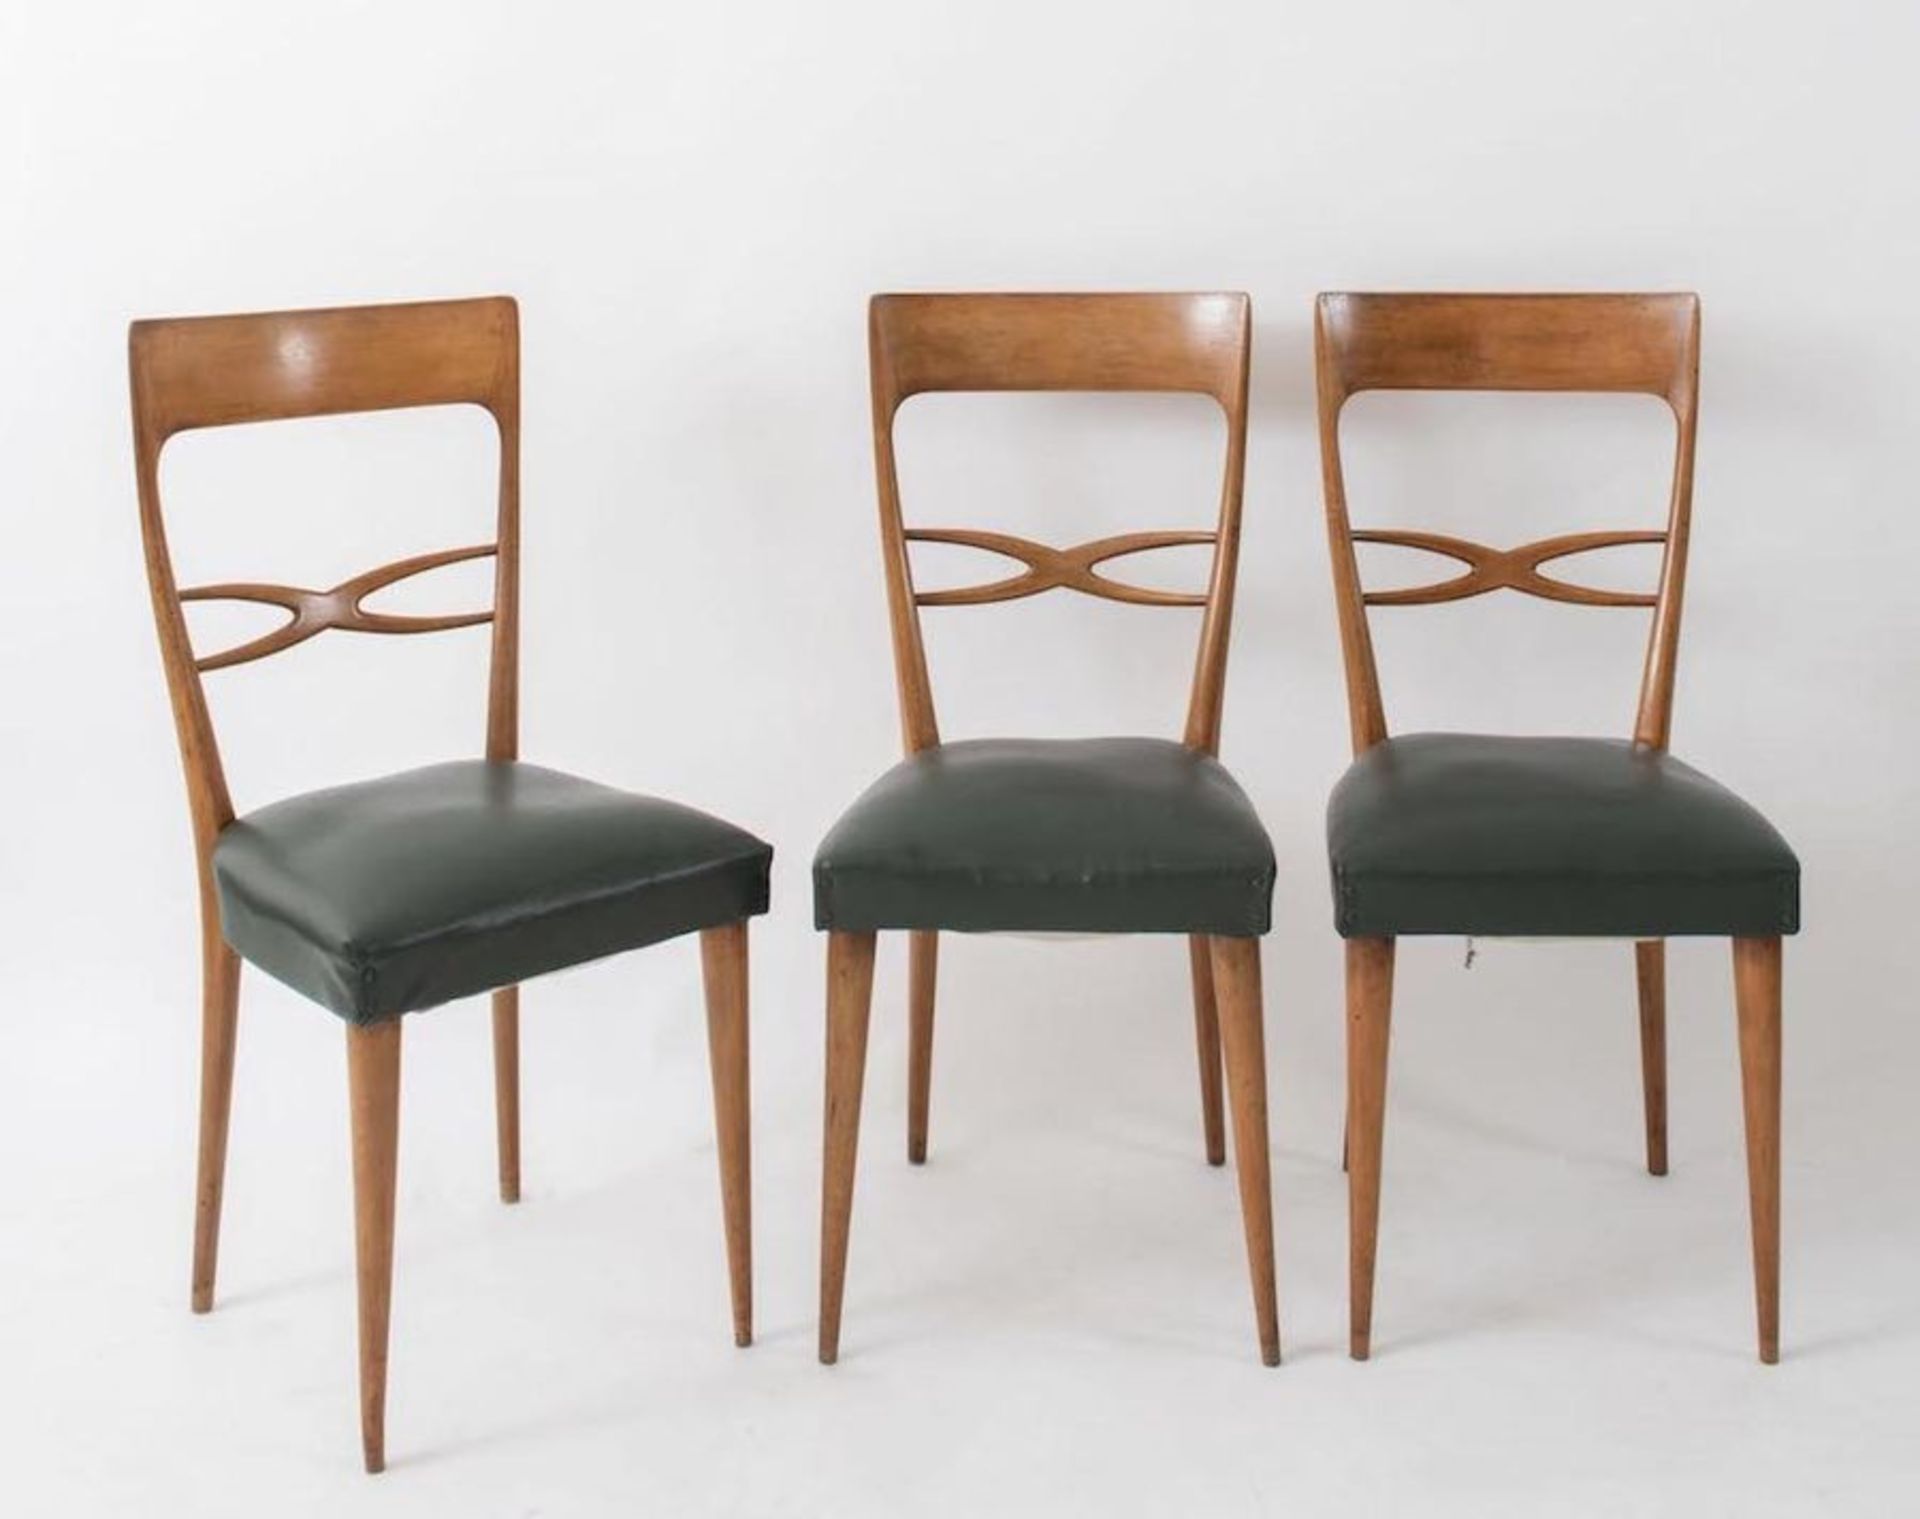 MELCHIORRE BEGA, attr. Sei sedie in legno con rivestimento in pelle. Prod. Italia, 1960 ca. Cm 95x42 - Image 3 of 3